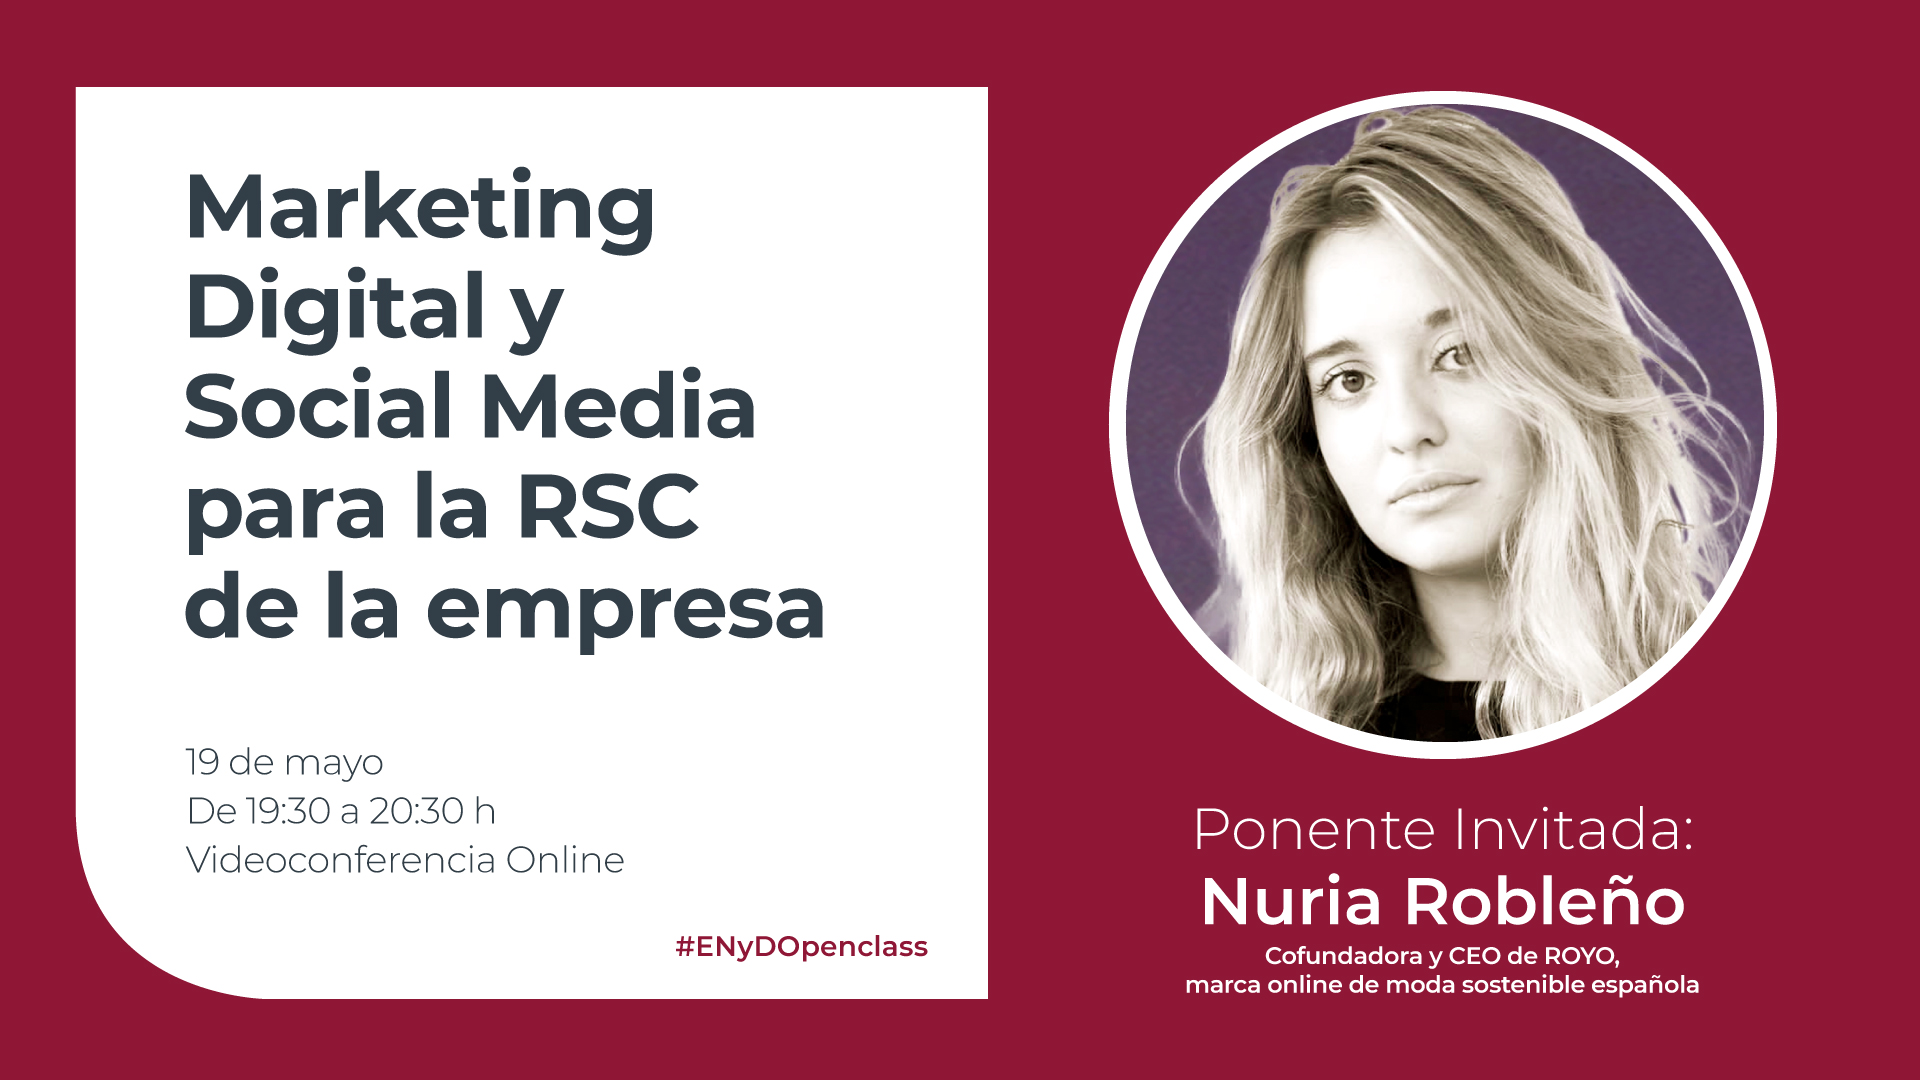 ENyDOpenClass Marketing Digital y Social Media para la RSC de la empresa Nuria Robleño